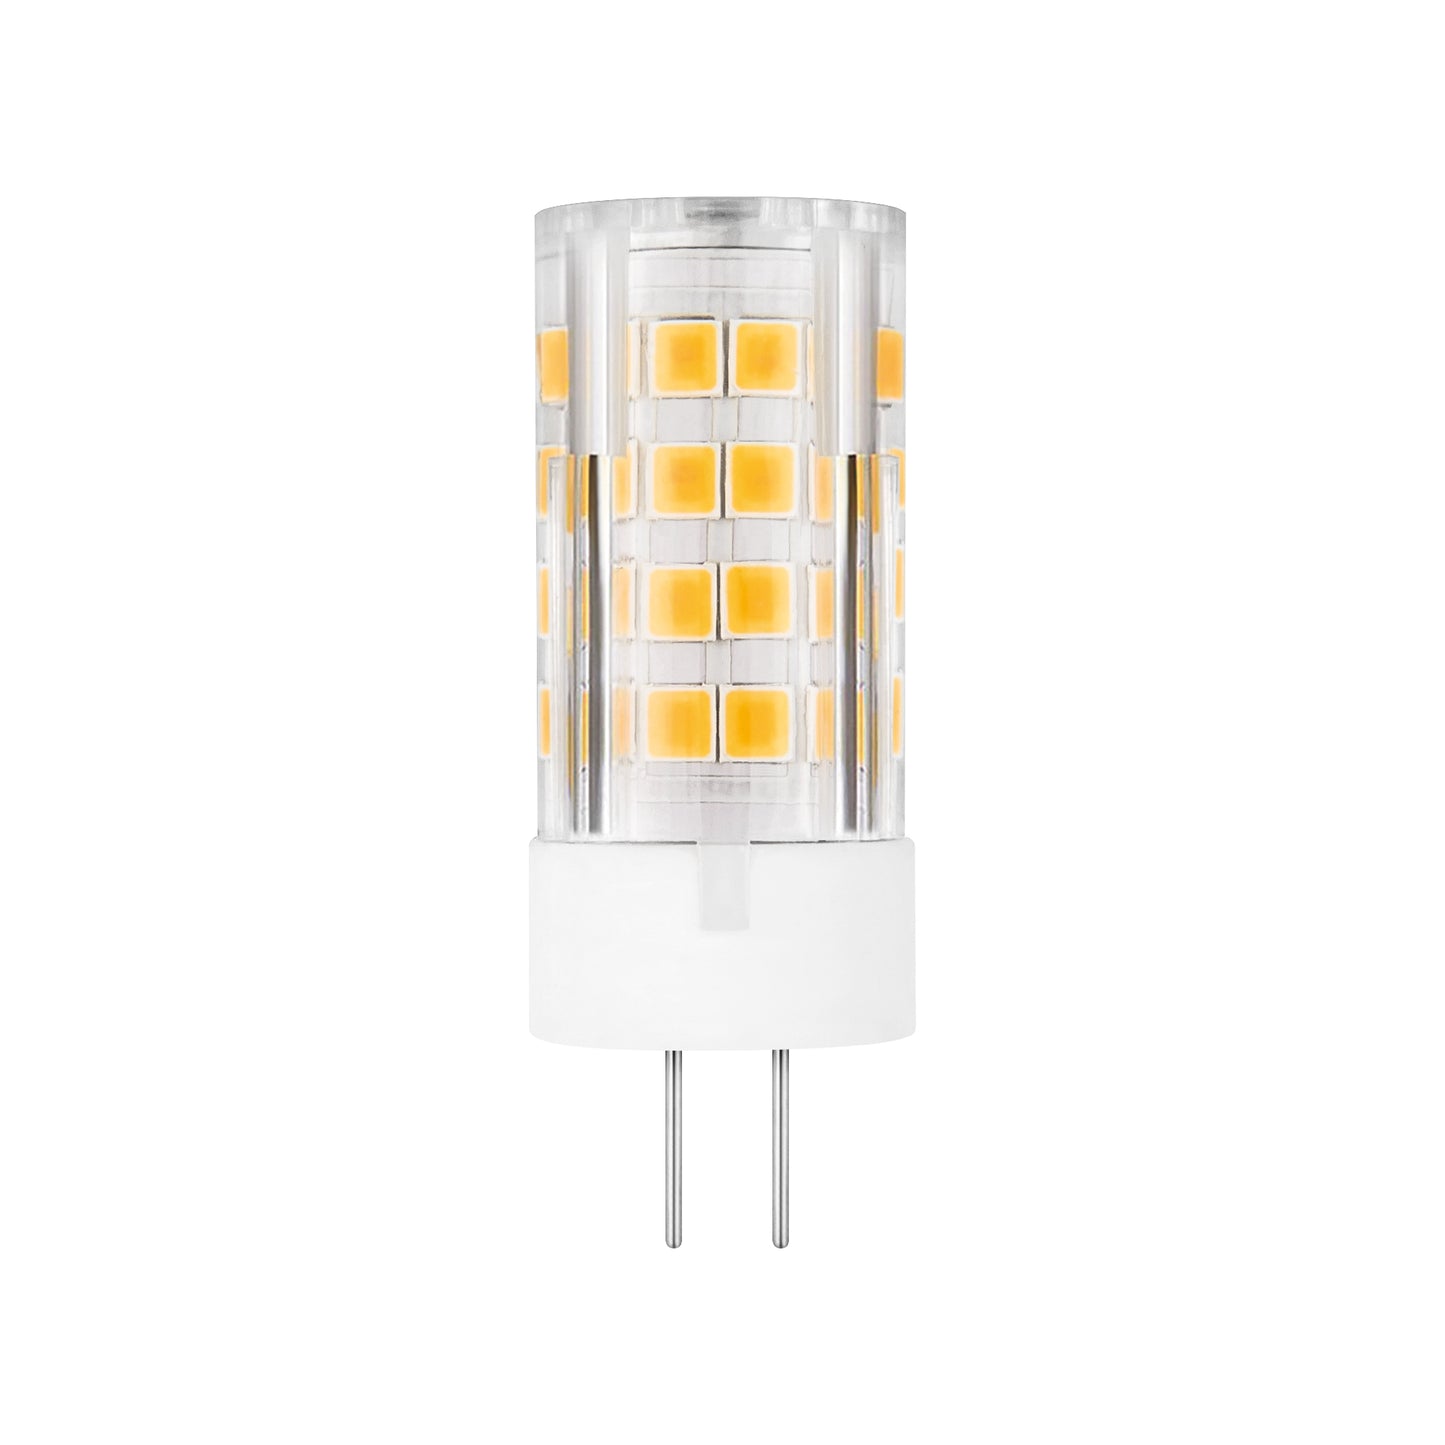 LAMPE LED MATEL G4 ALUMINIUM PC 12V 4W 